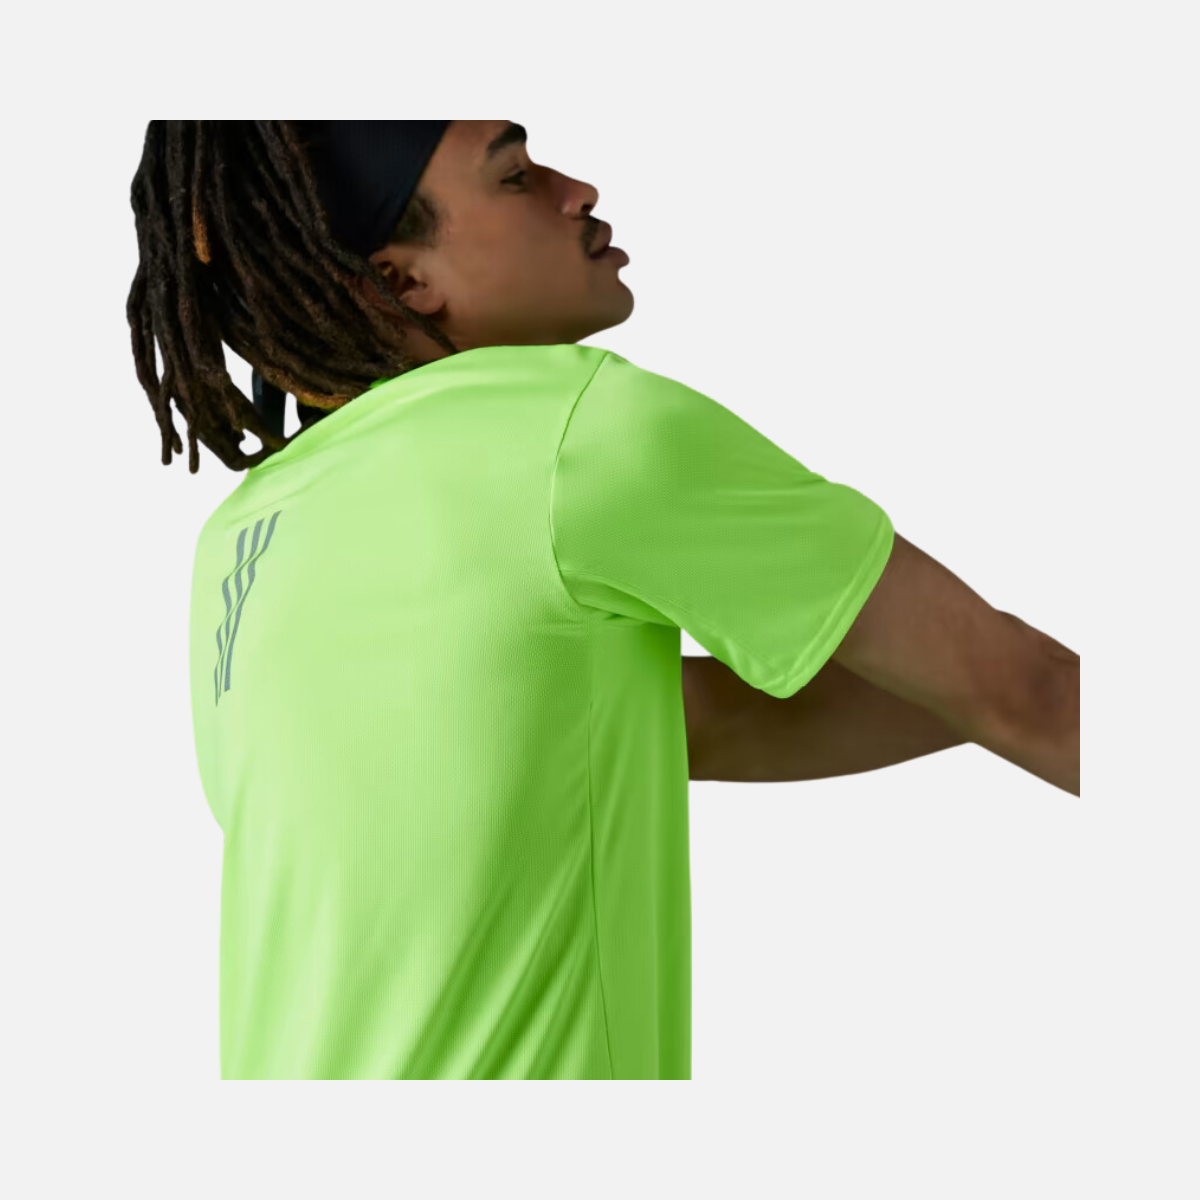 Adidas Designed 4 Men's Running T-shirt -Lucid Lemon